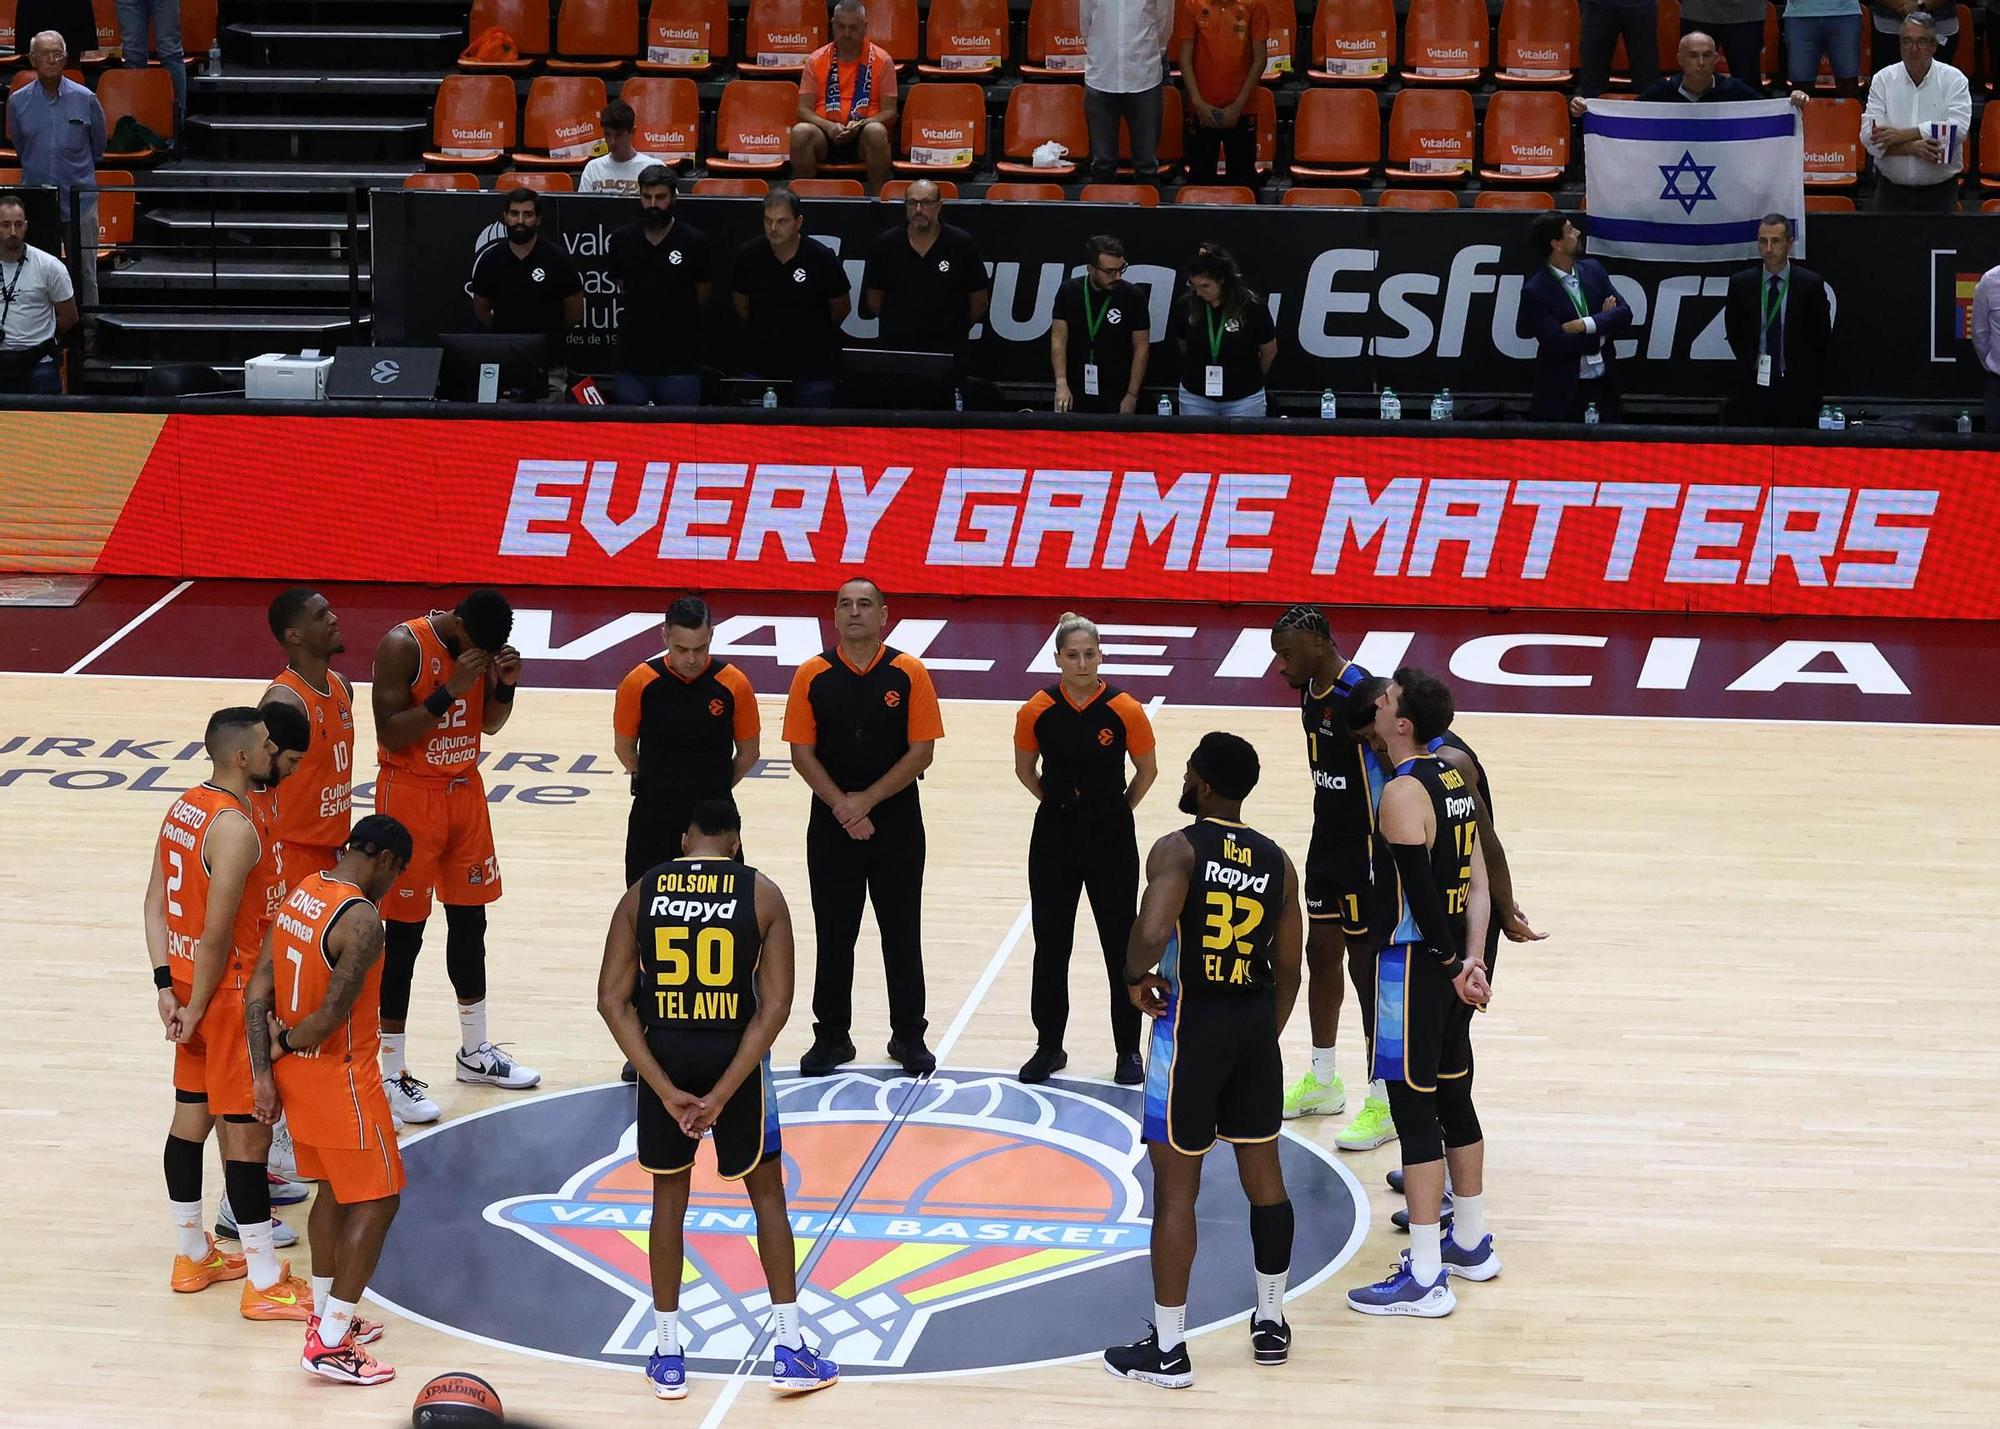 Valencia Basket vs Maccabi de Tel Aviv de Euroliga